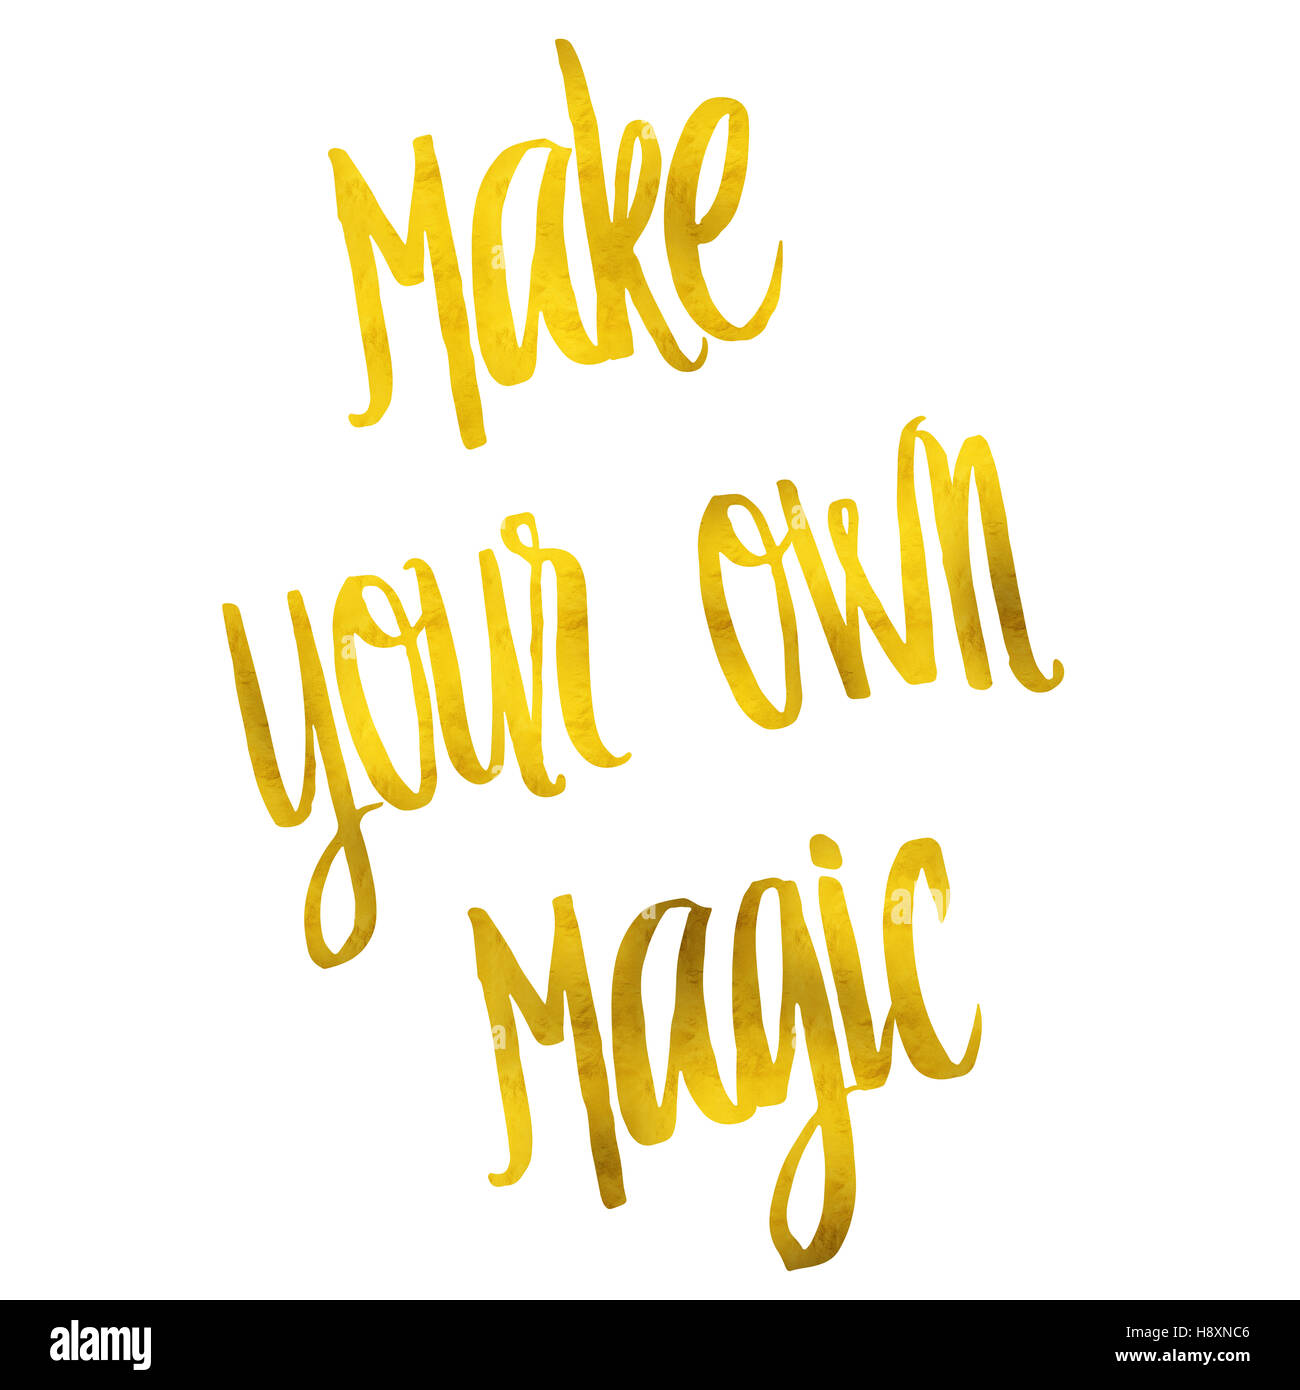 Crea la tua magia oro in similpelle di lamina metallica preventivo di ispirazione isolata Foto Stock